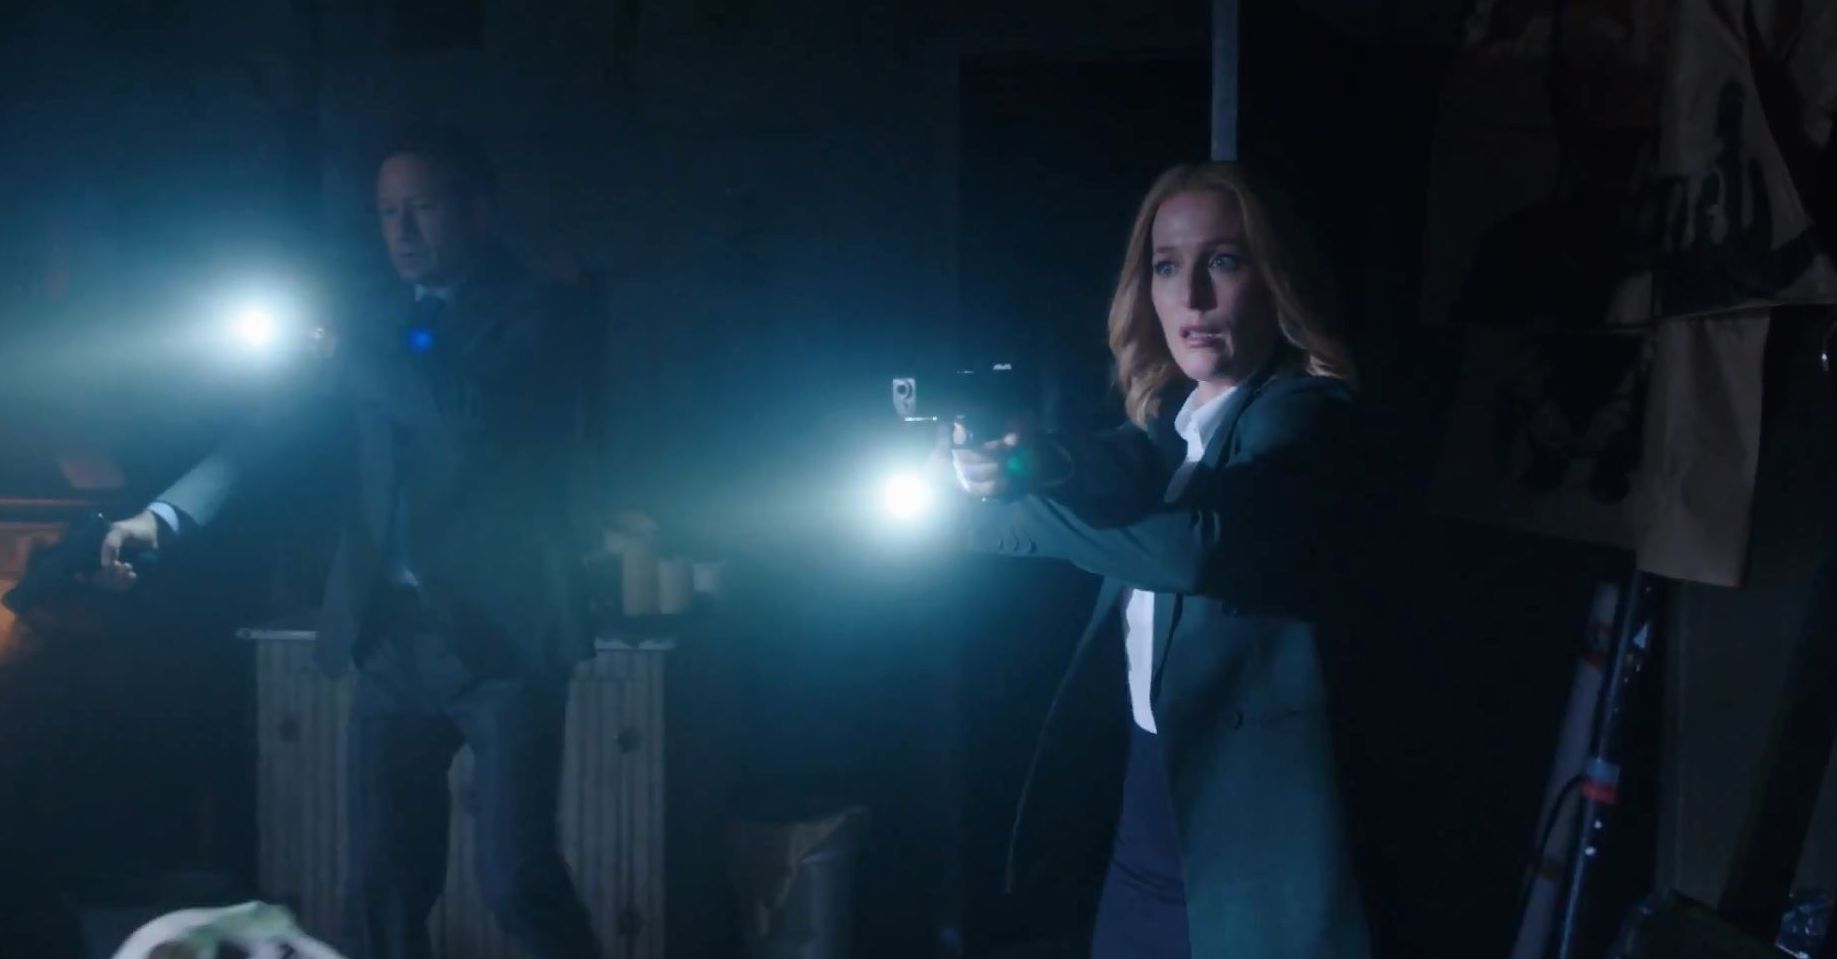 Gillian-Anderson in X-Files mini-series